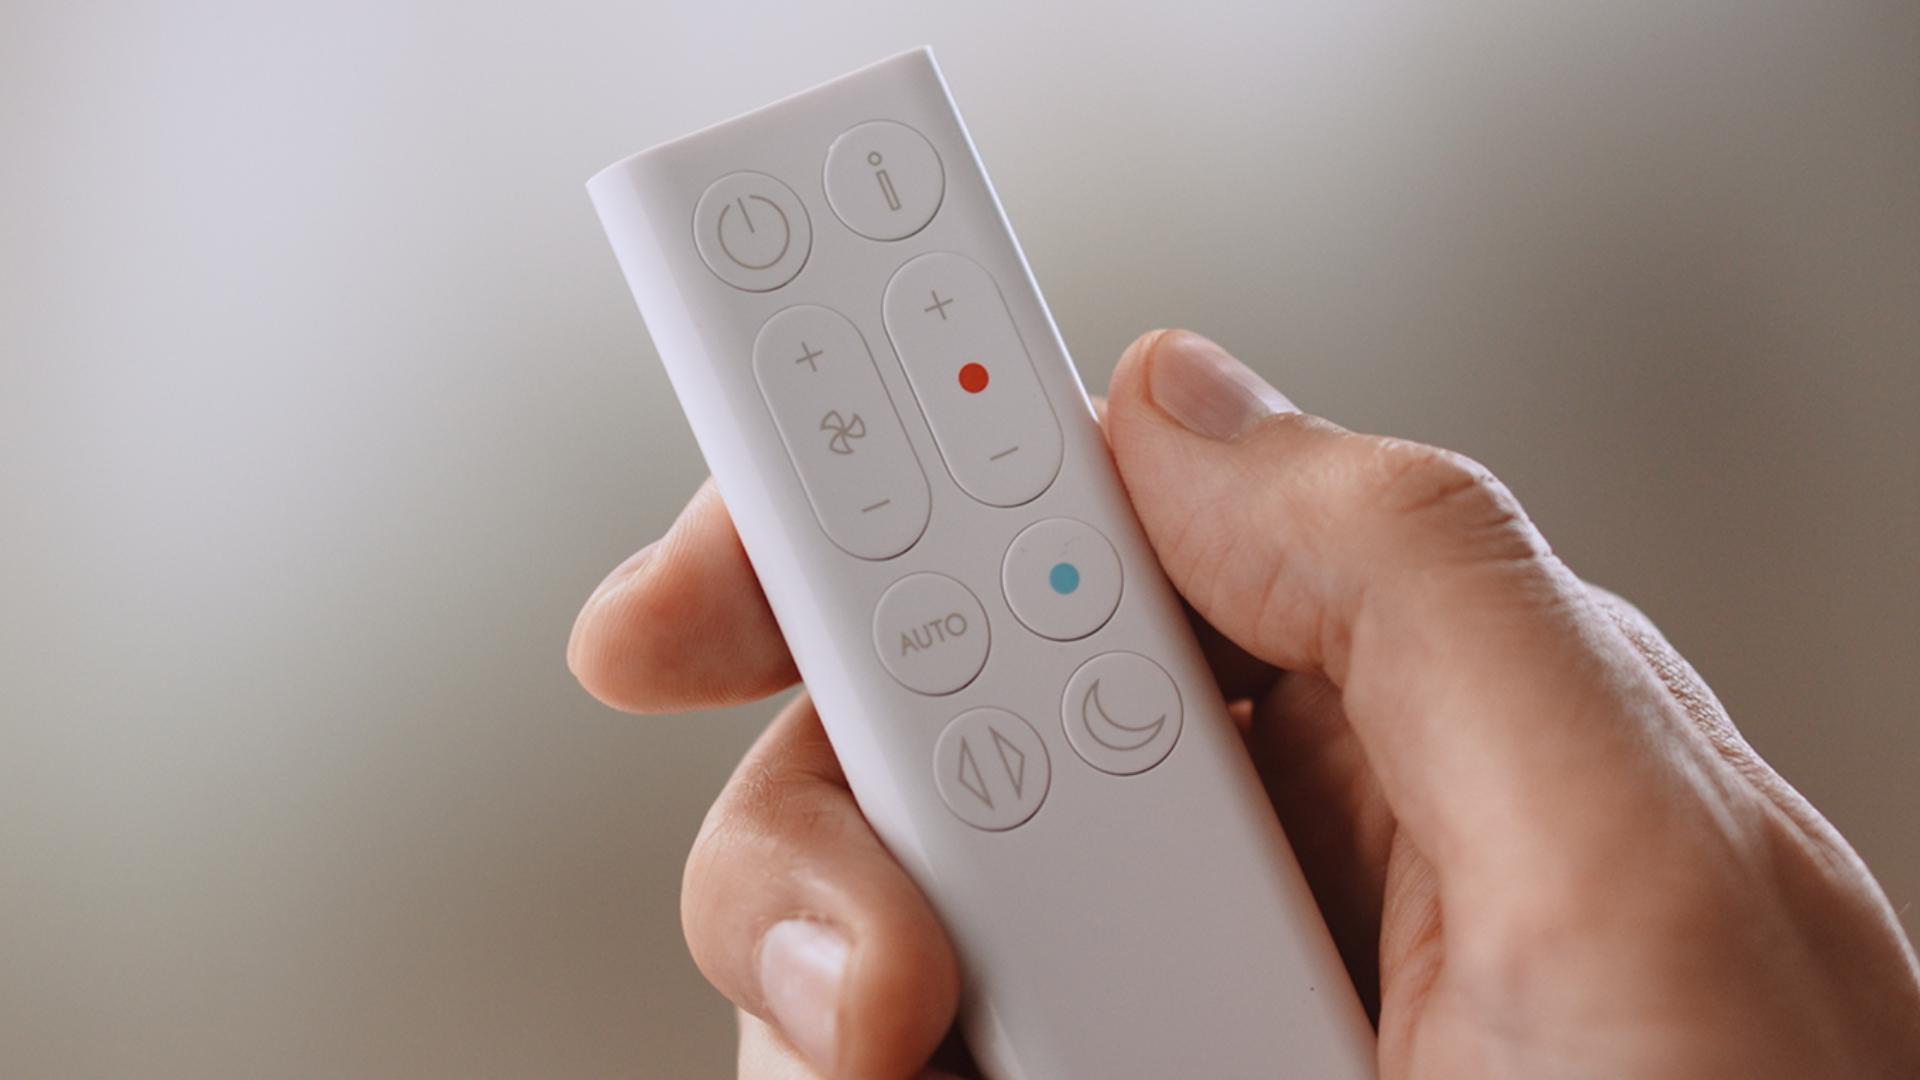 The remote control.